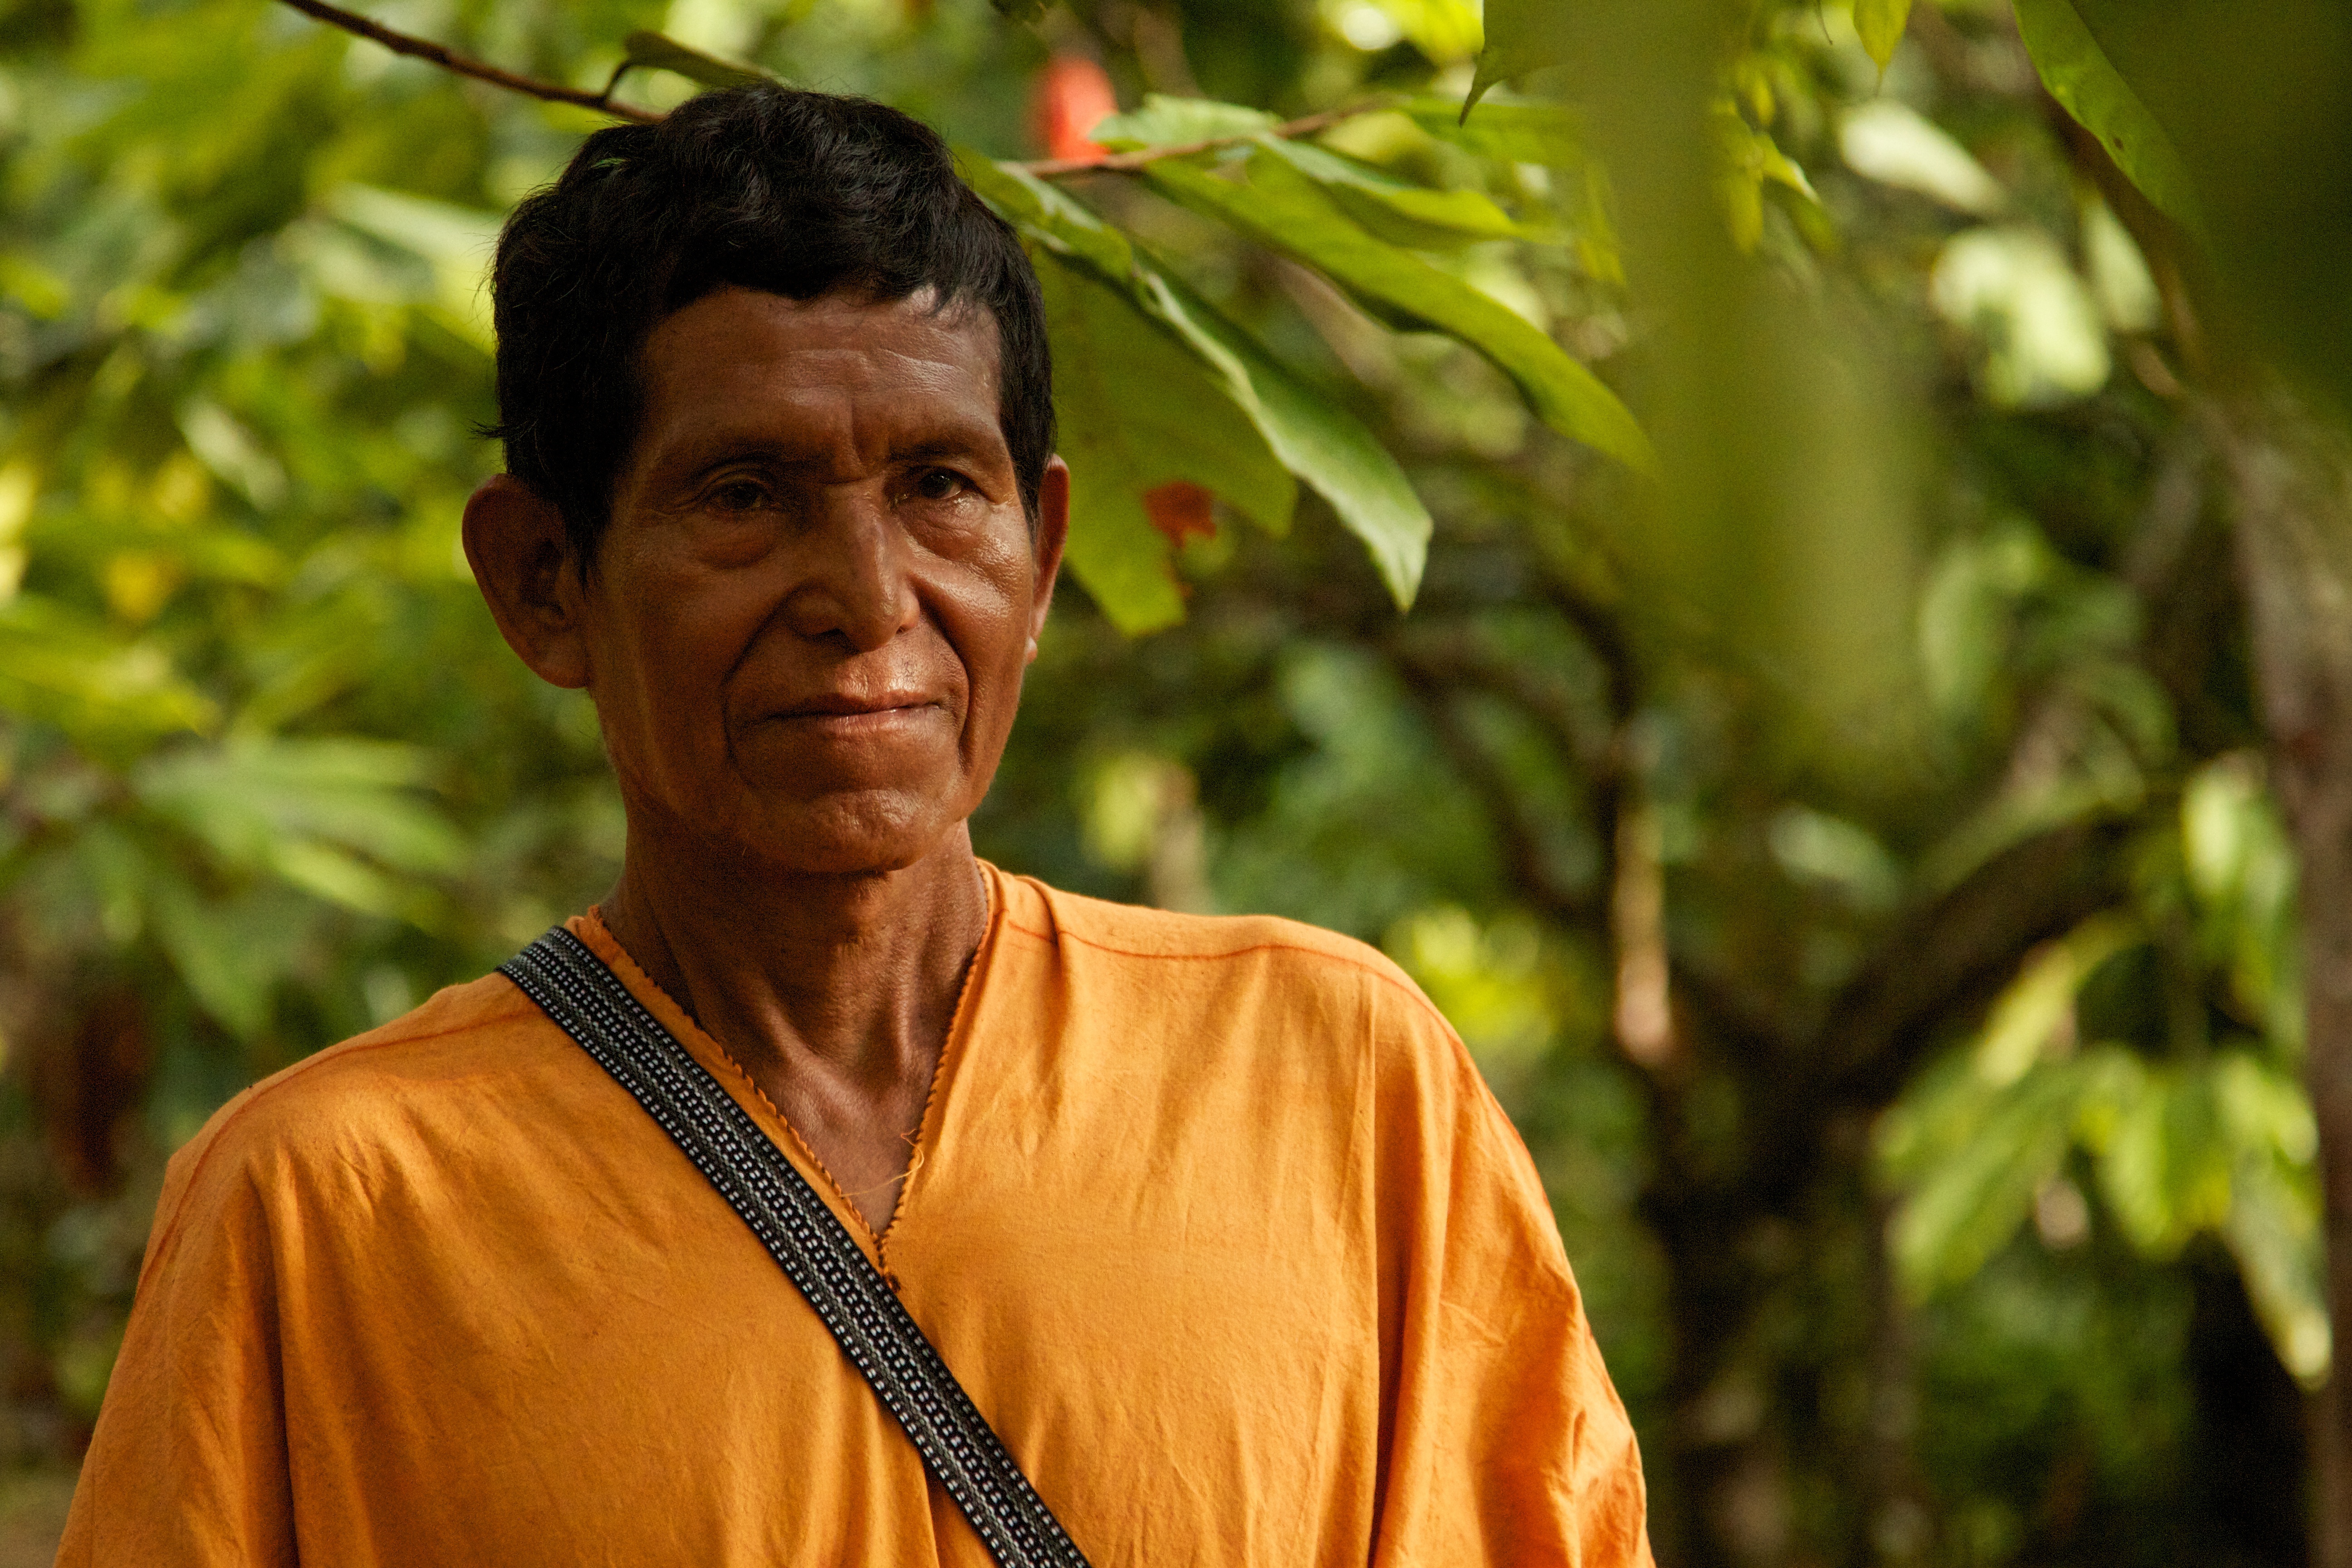 Antenor Chimanca Mahuanca, Pangoa farmer-member.